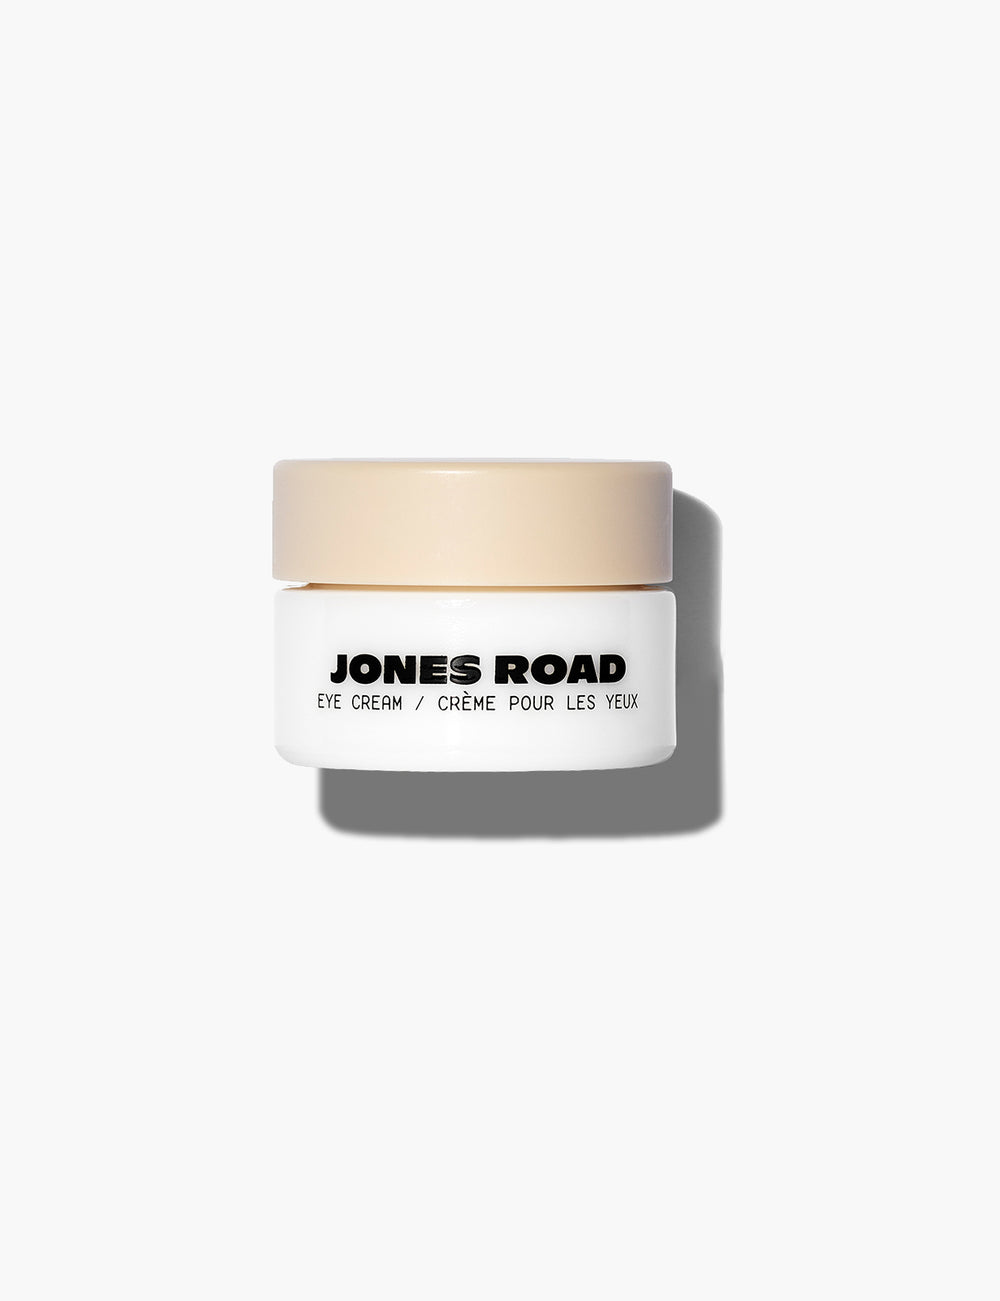 The Eye Cream by Jones Road Beauty